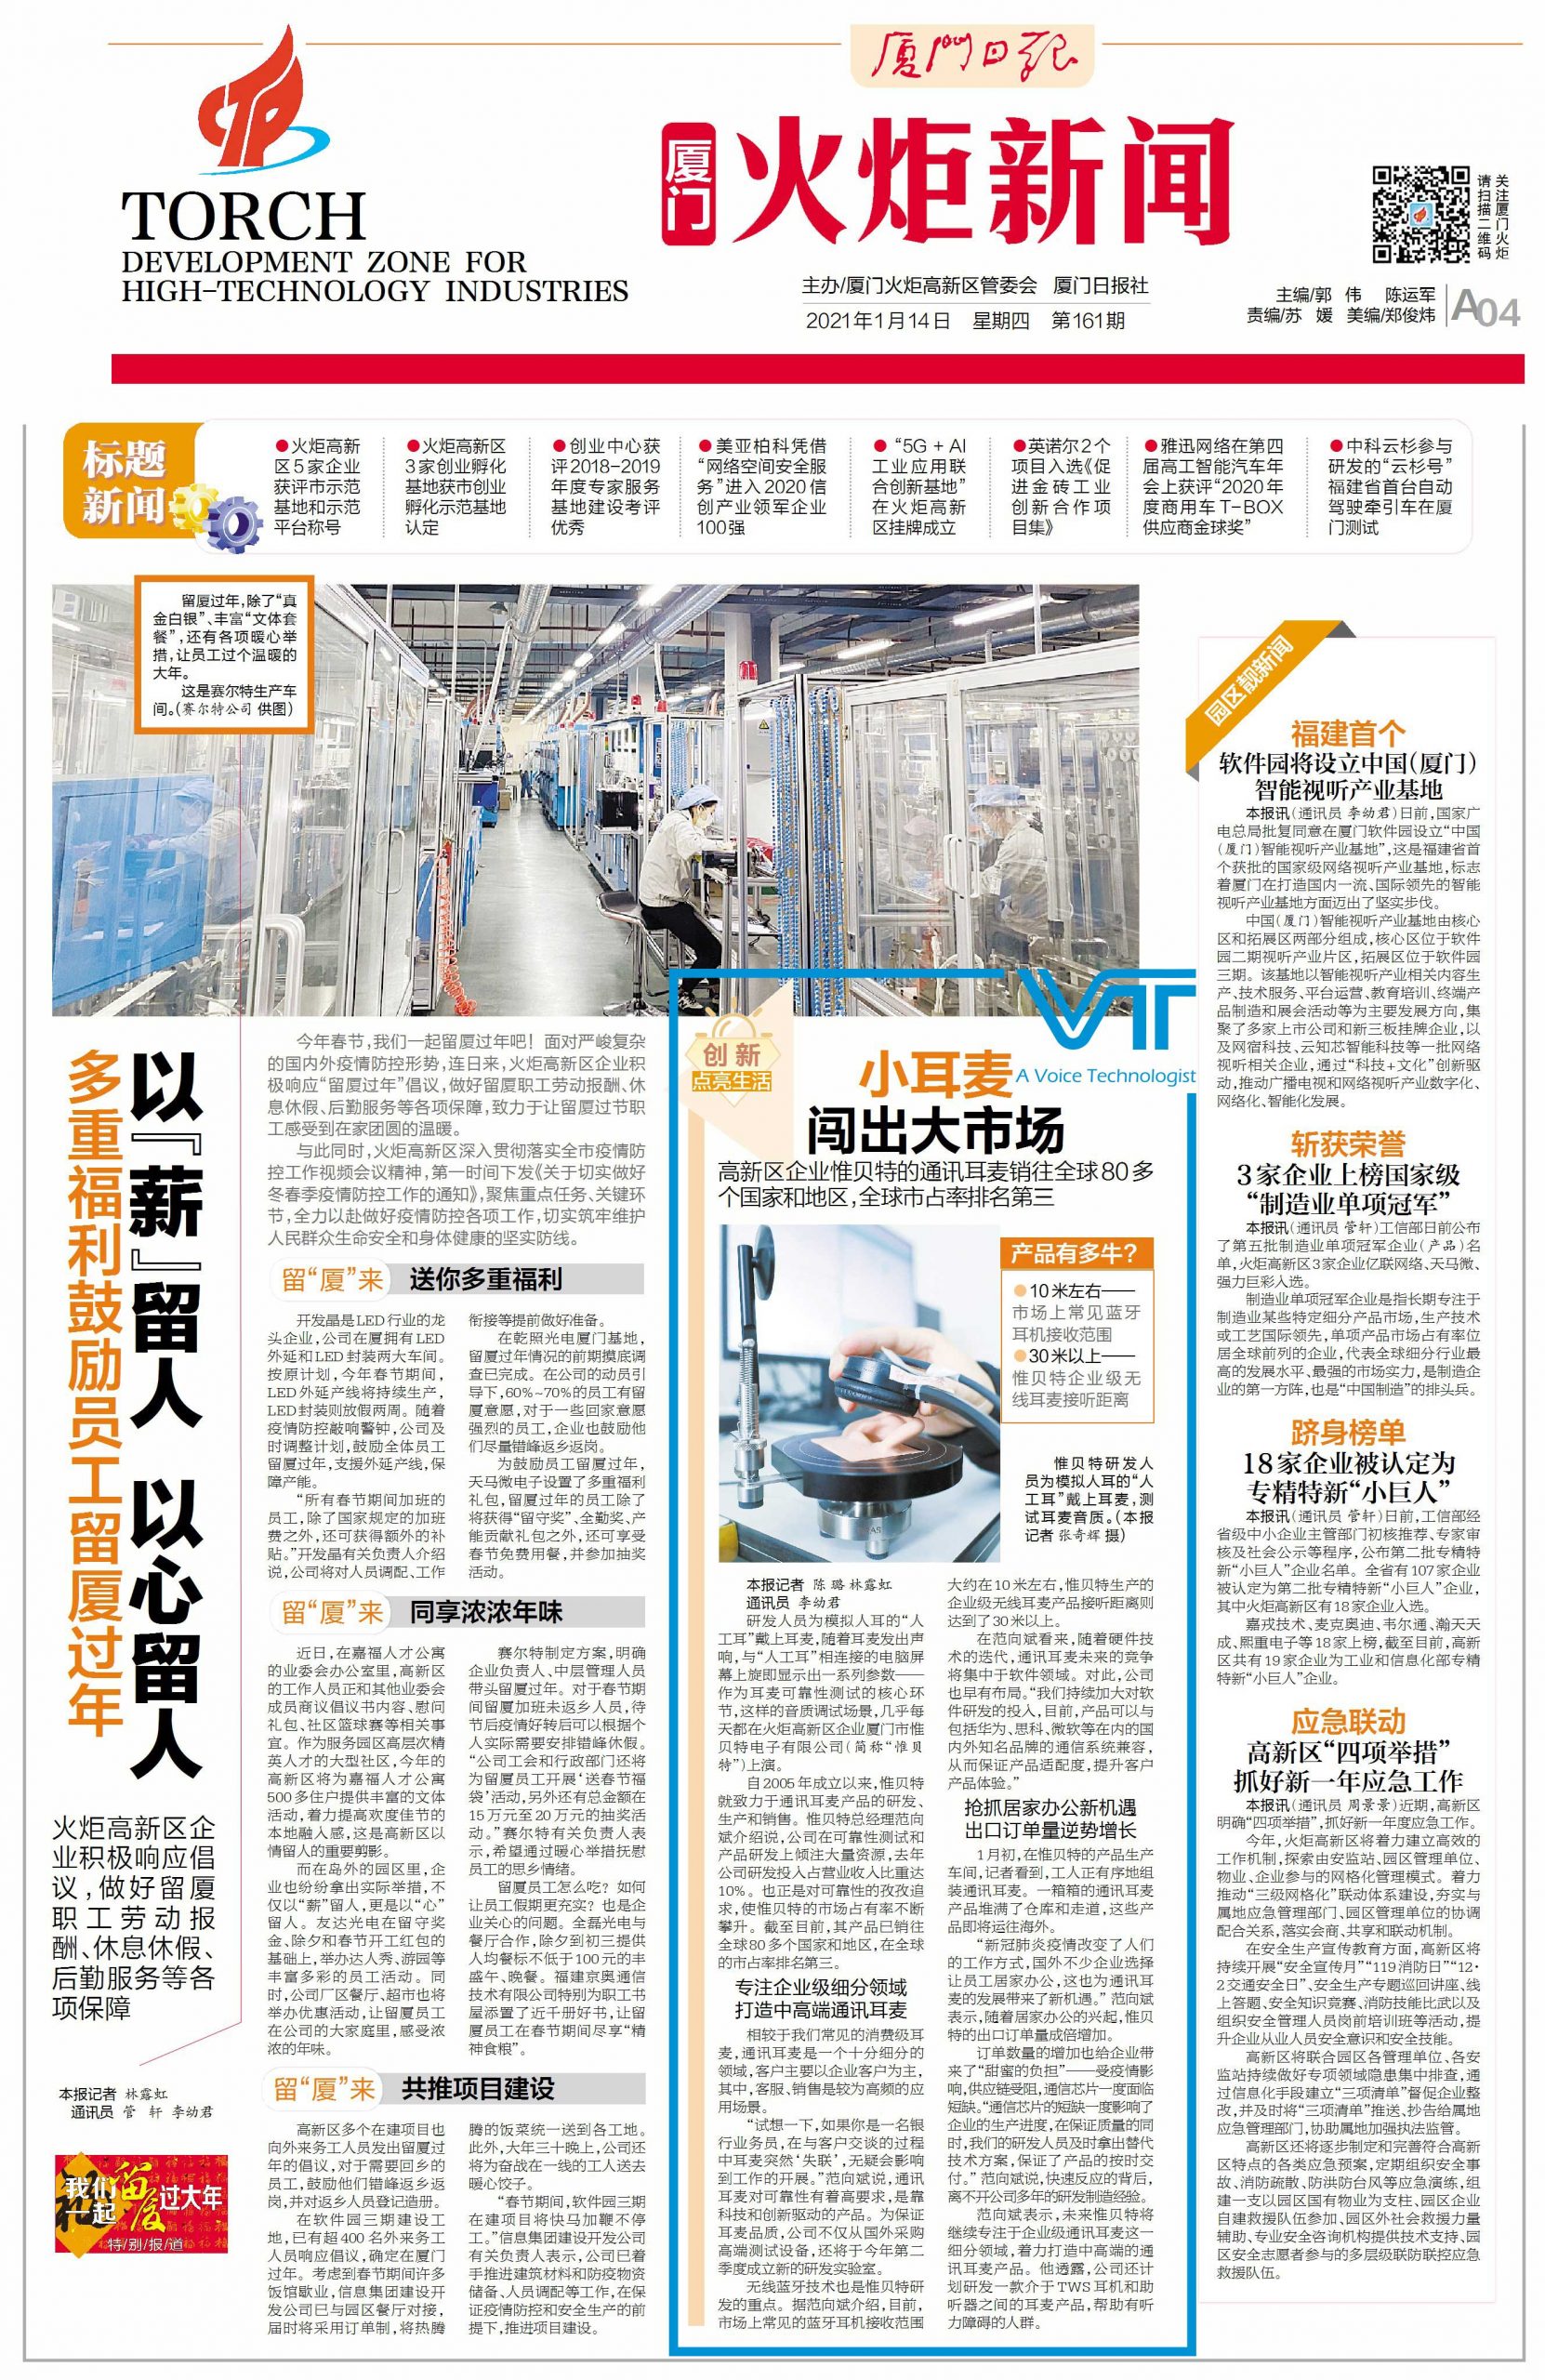 ¡La historia de Flash News-VT se publicó en las principales plataformas de red chinas!